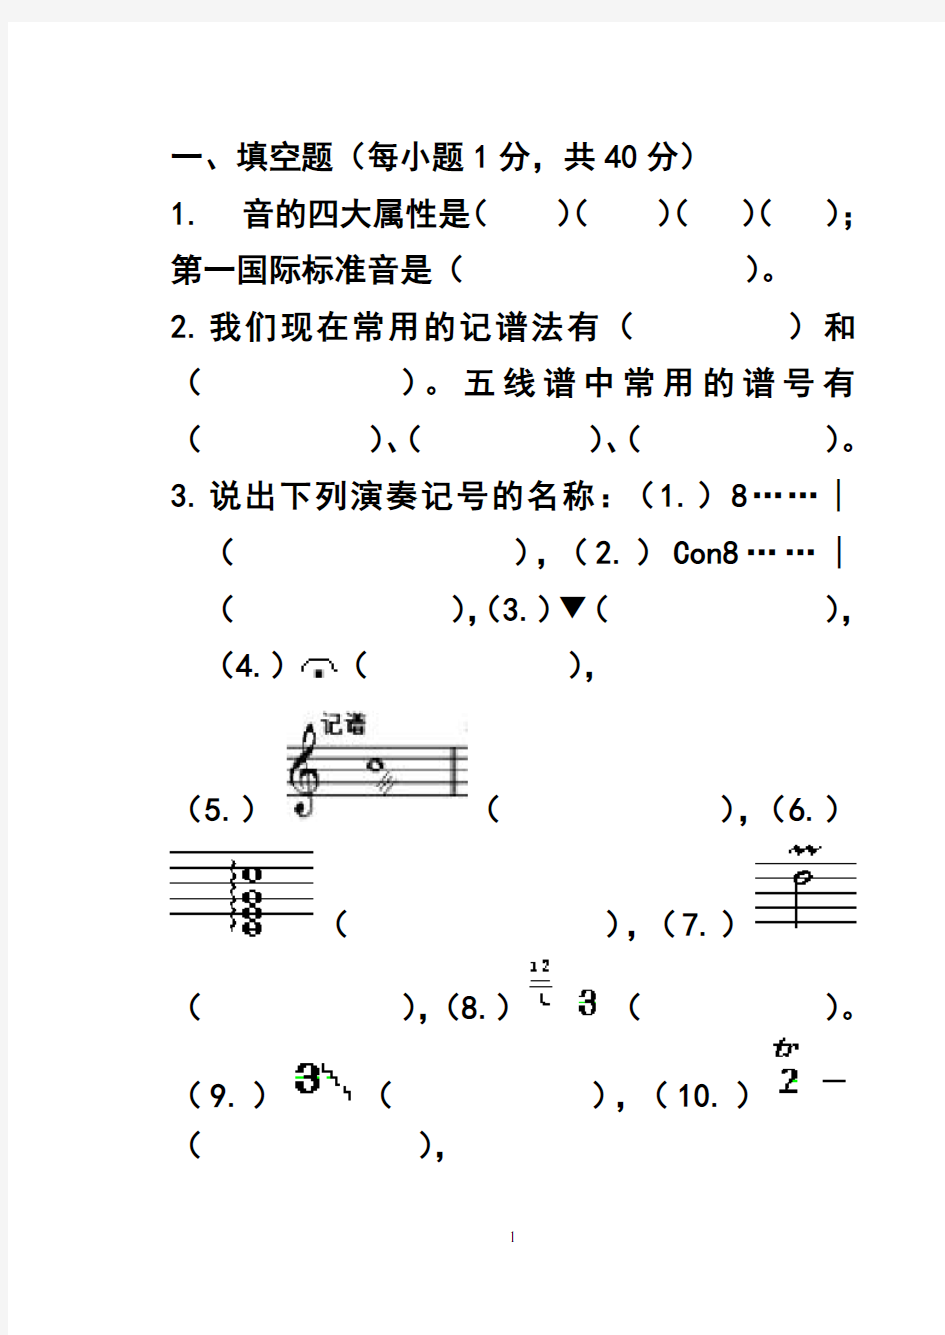 音乐理论基础模拟考试题(2020年整理).pdf